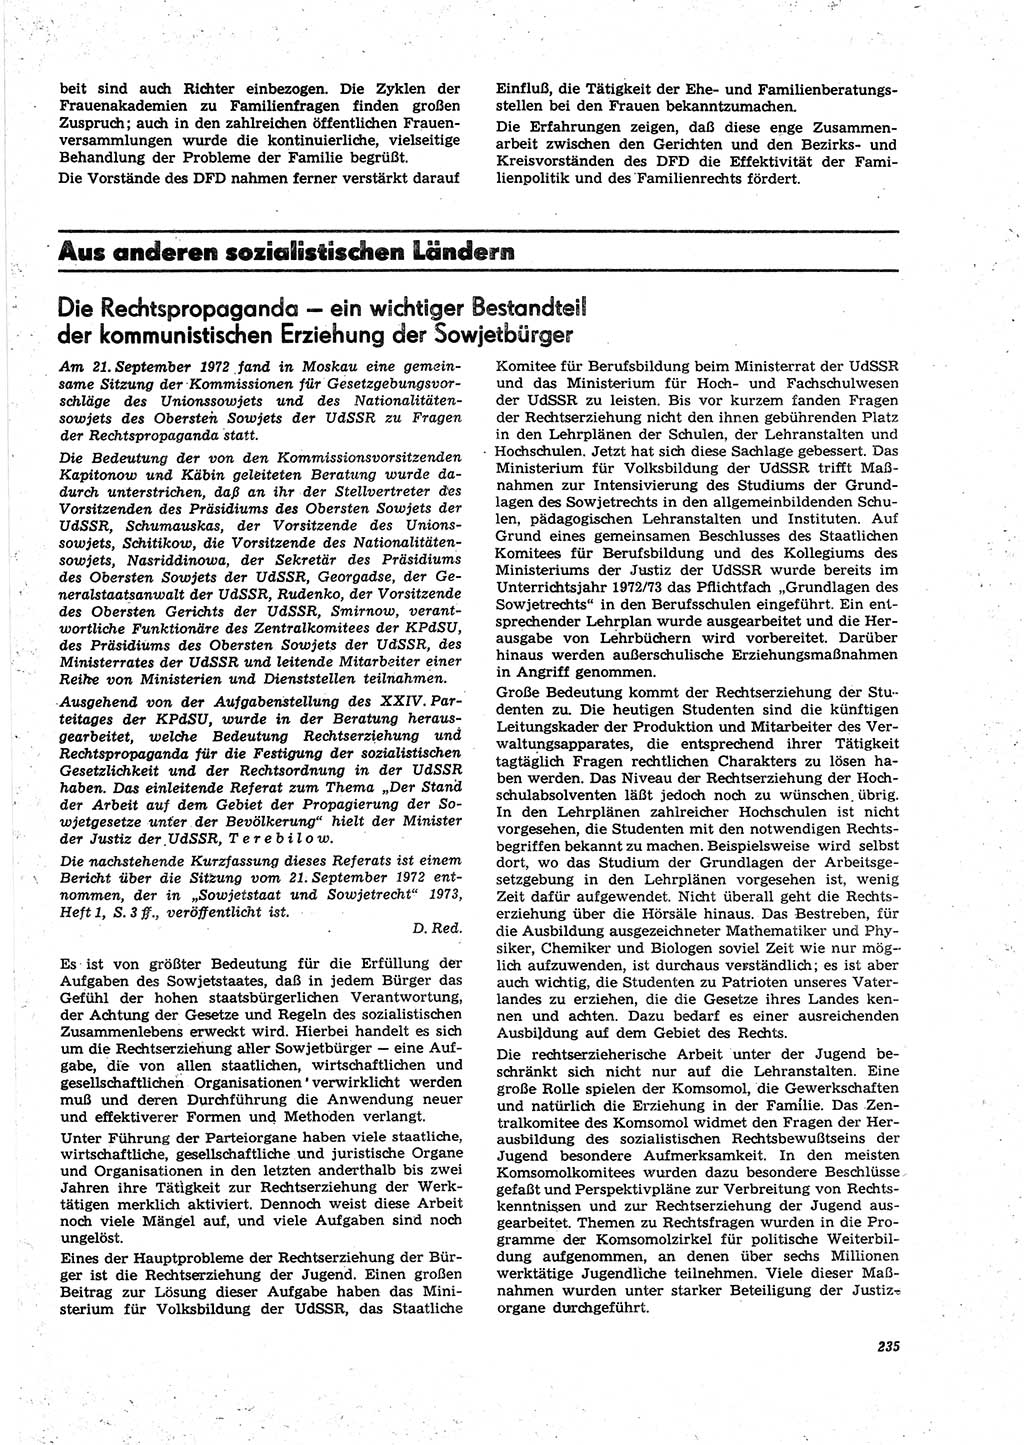 Neue Justiz (NJ), Zeitschrift für Recht und Rechtswissenschaft [Deutsche Demokratische Republik (DDR)], 27. Jahrgang 1973, Seite 235 (NJ DDR 1973, S. 235)